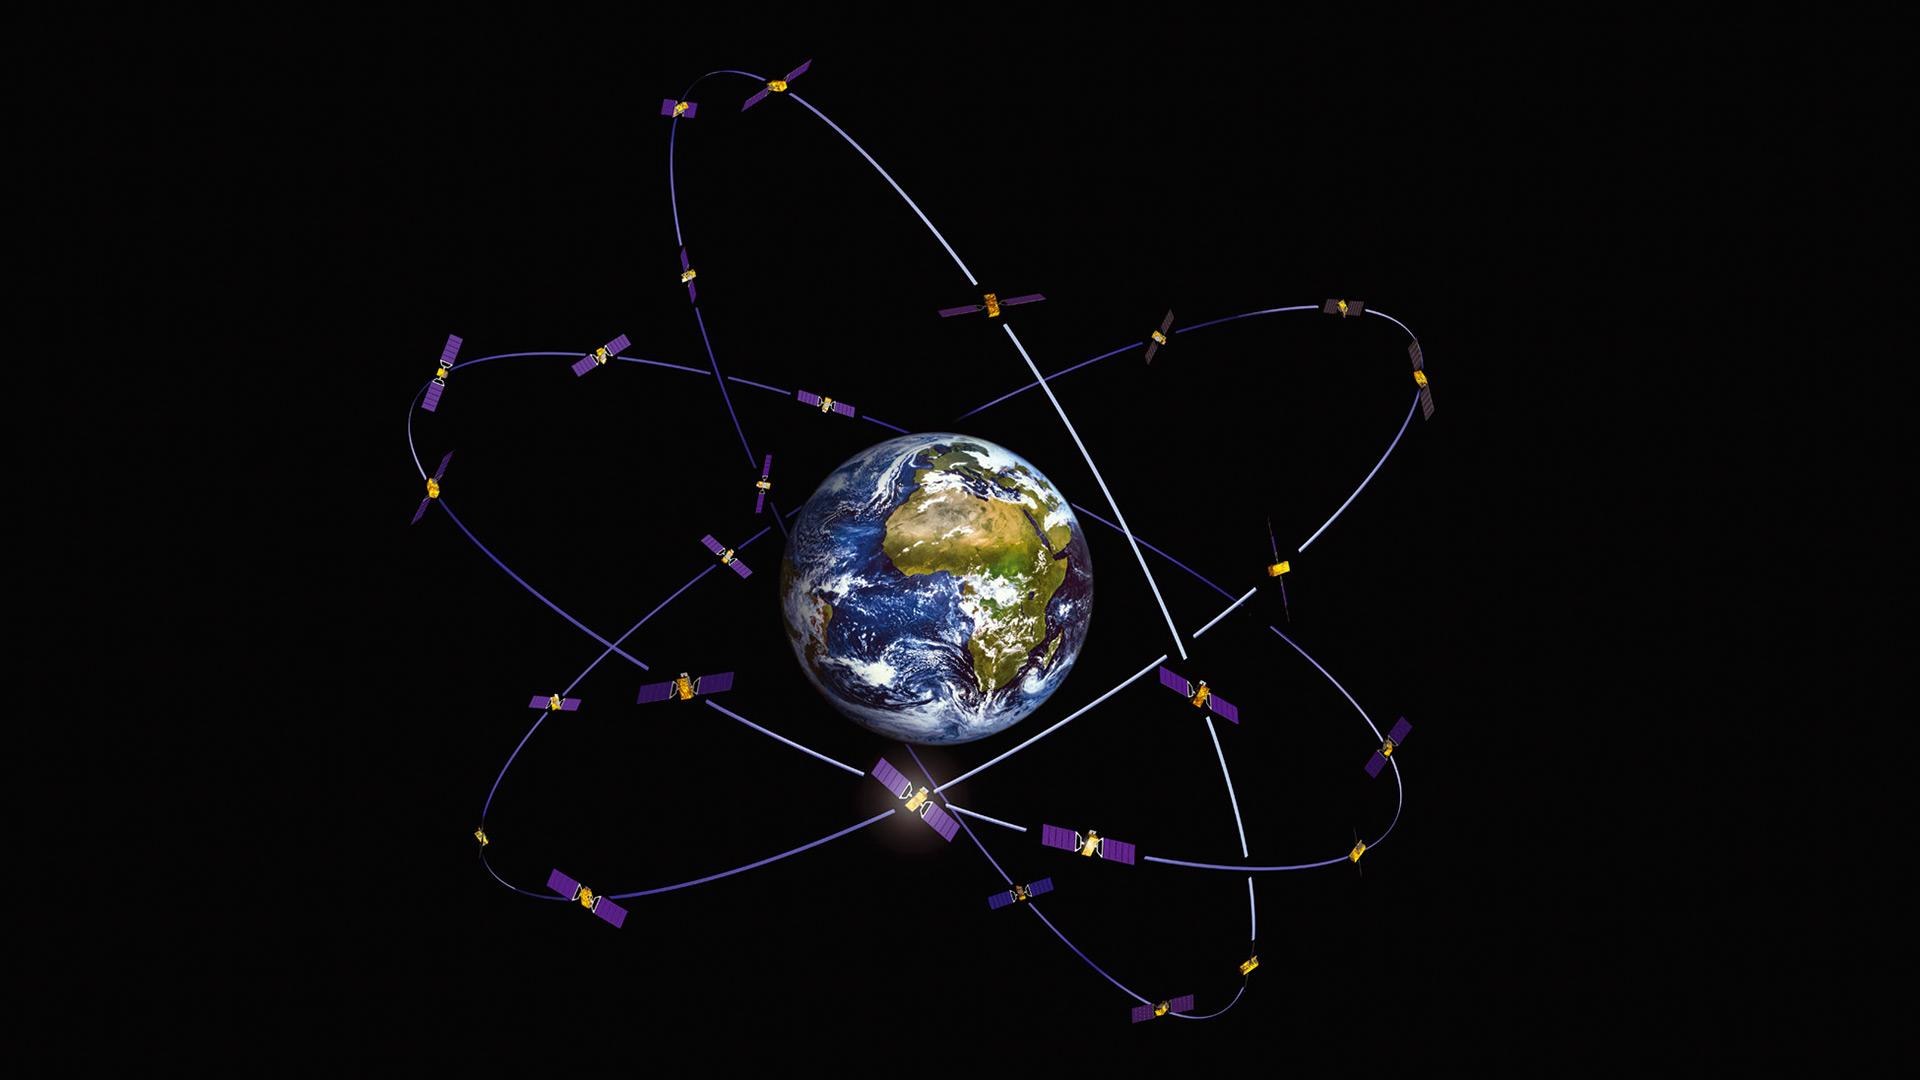 Das Navigationssystem Galileo ist seit Dezember 2016 im Probebetrieb